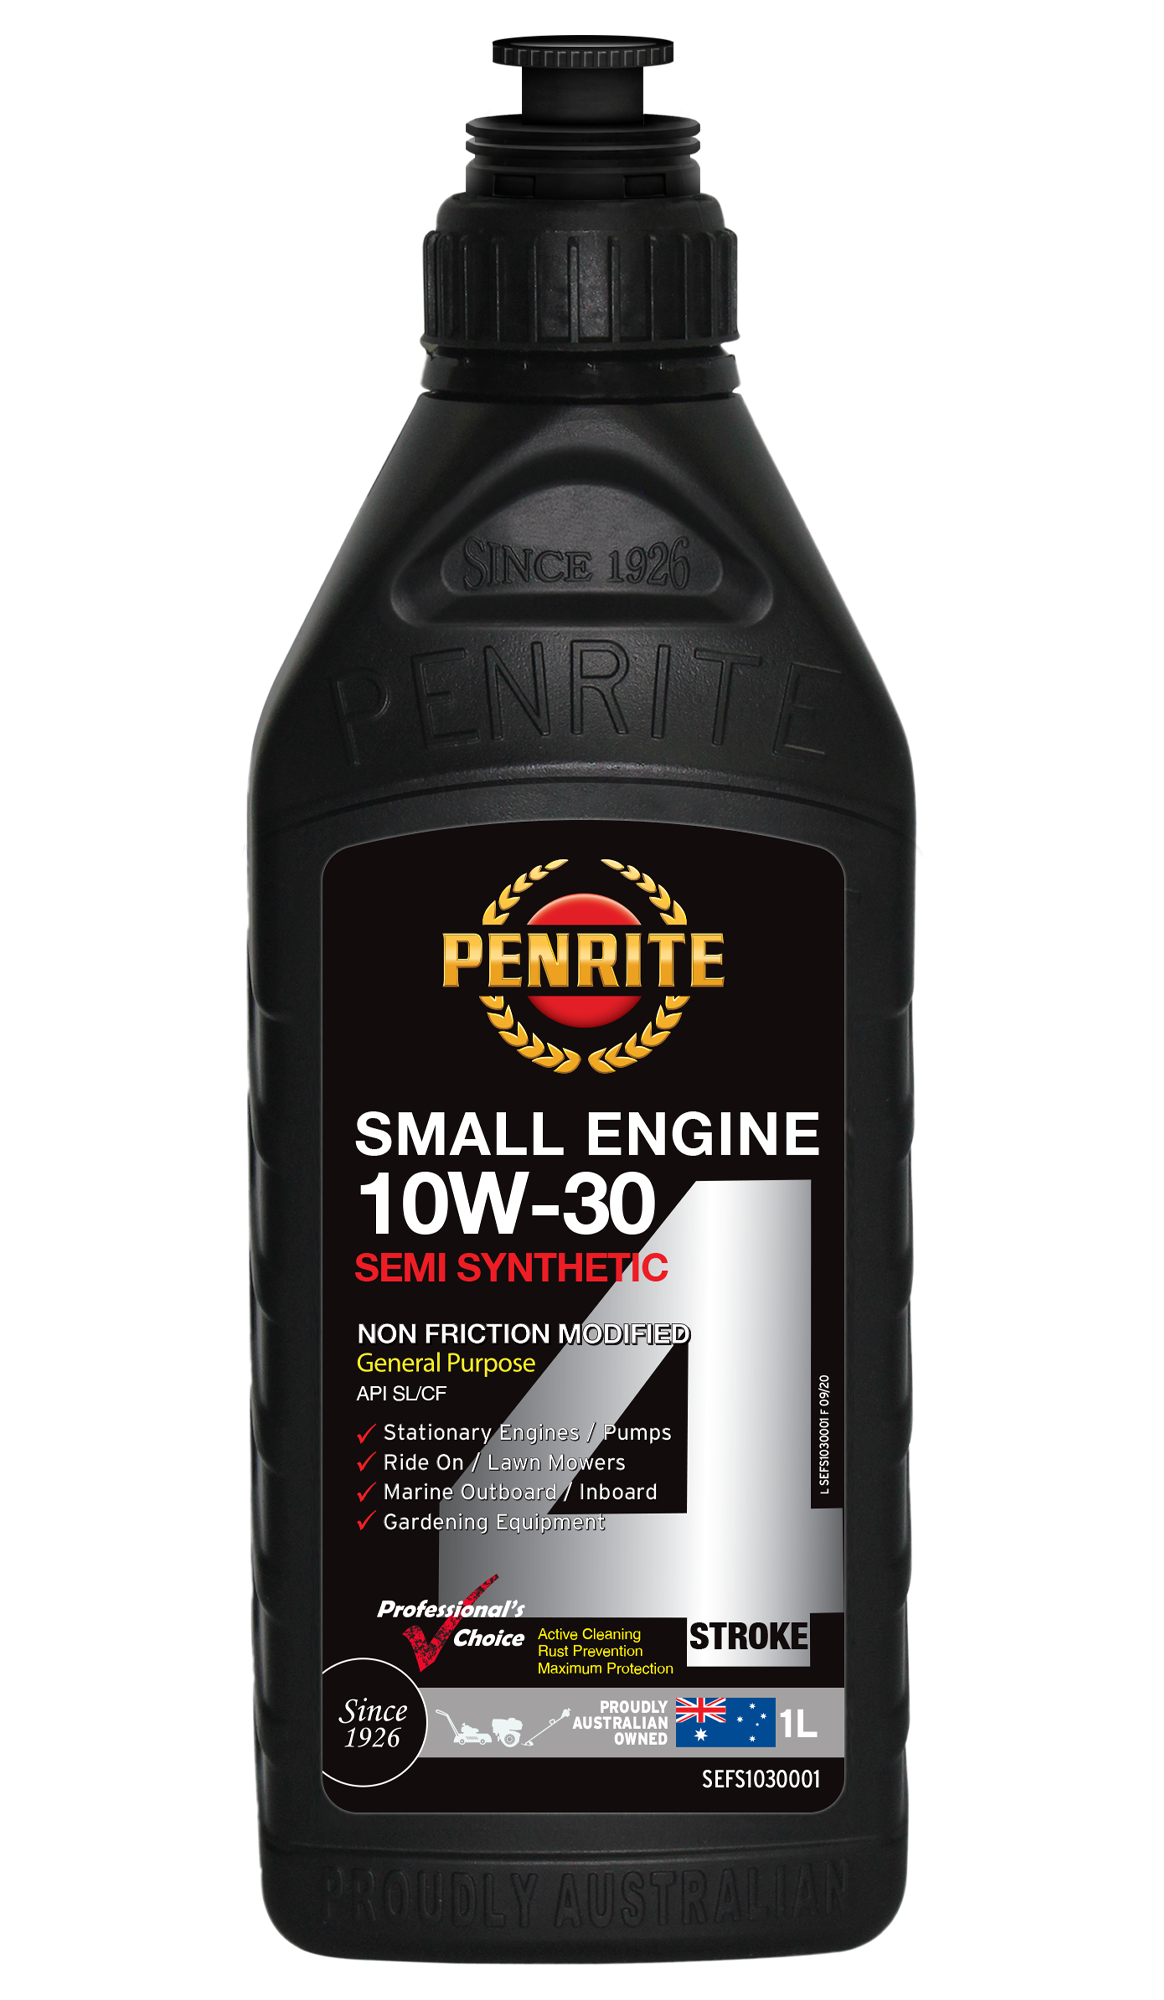 Penrite Small Engine 4 Stroke 10W-30 Semi Synthetic Engine Oil 1 Litre